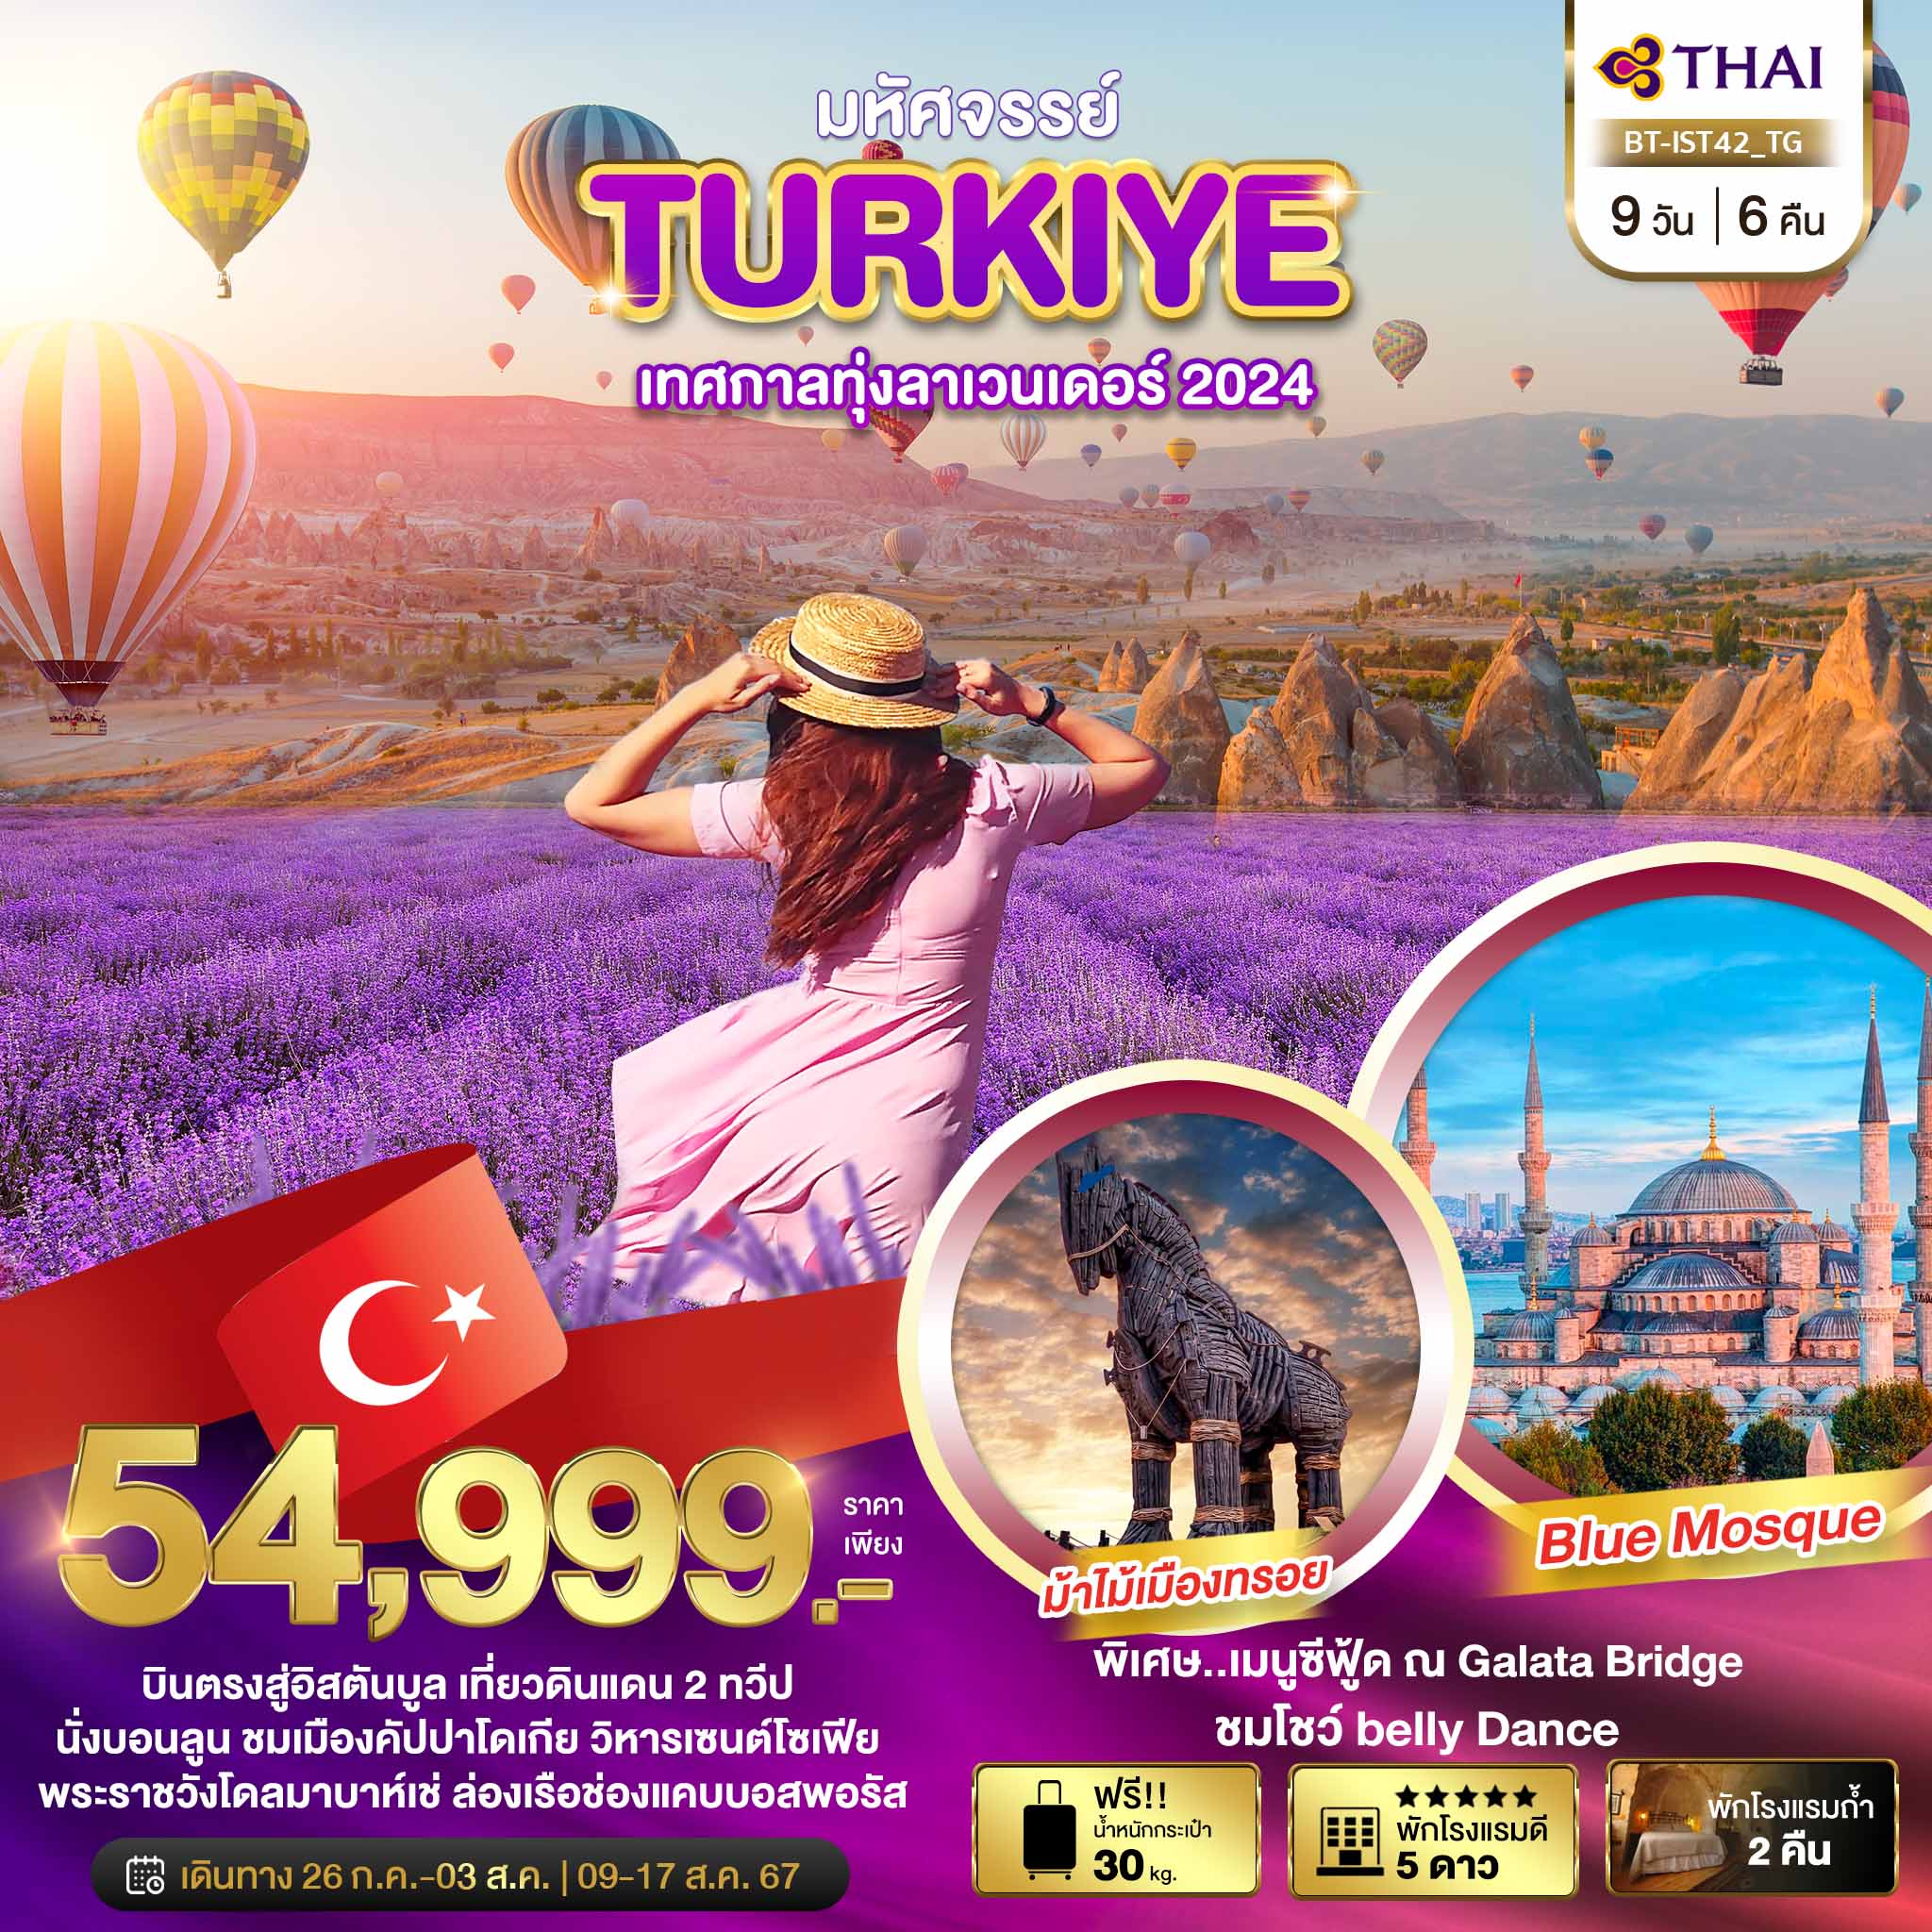 ทัวร์ตุรกี มหัศจรรย์.. TURKIYE เทศกาลทุ่งลาเวนเดอร์ 2024  9วัน 6คืน TG